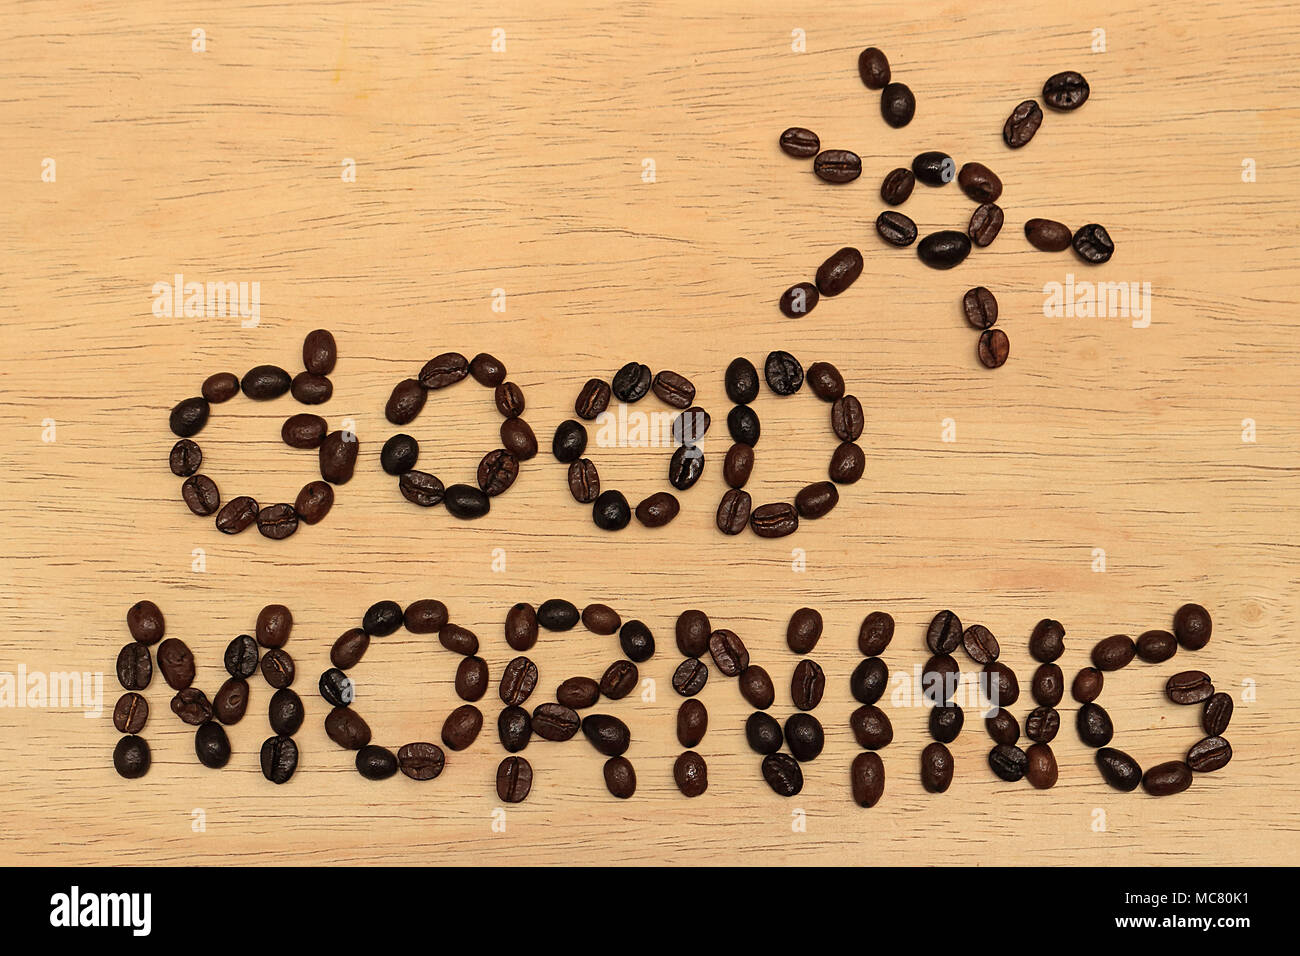 Es ist eine Nachricht, die 'guten Morgen' und ein Bild der Sonne über die Nachricht, die Kaffeebohnen, die Kulisse ist ein Holzbrett. Stockfoto